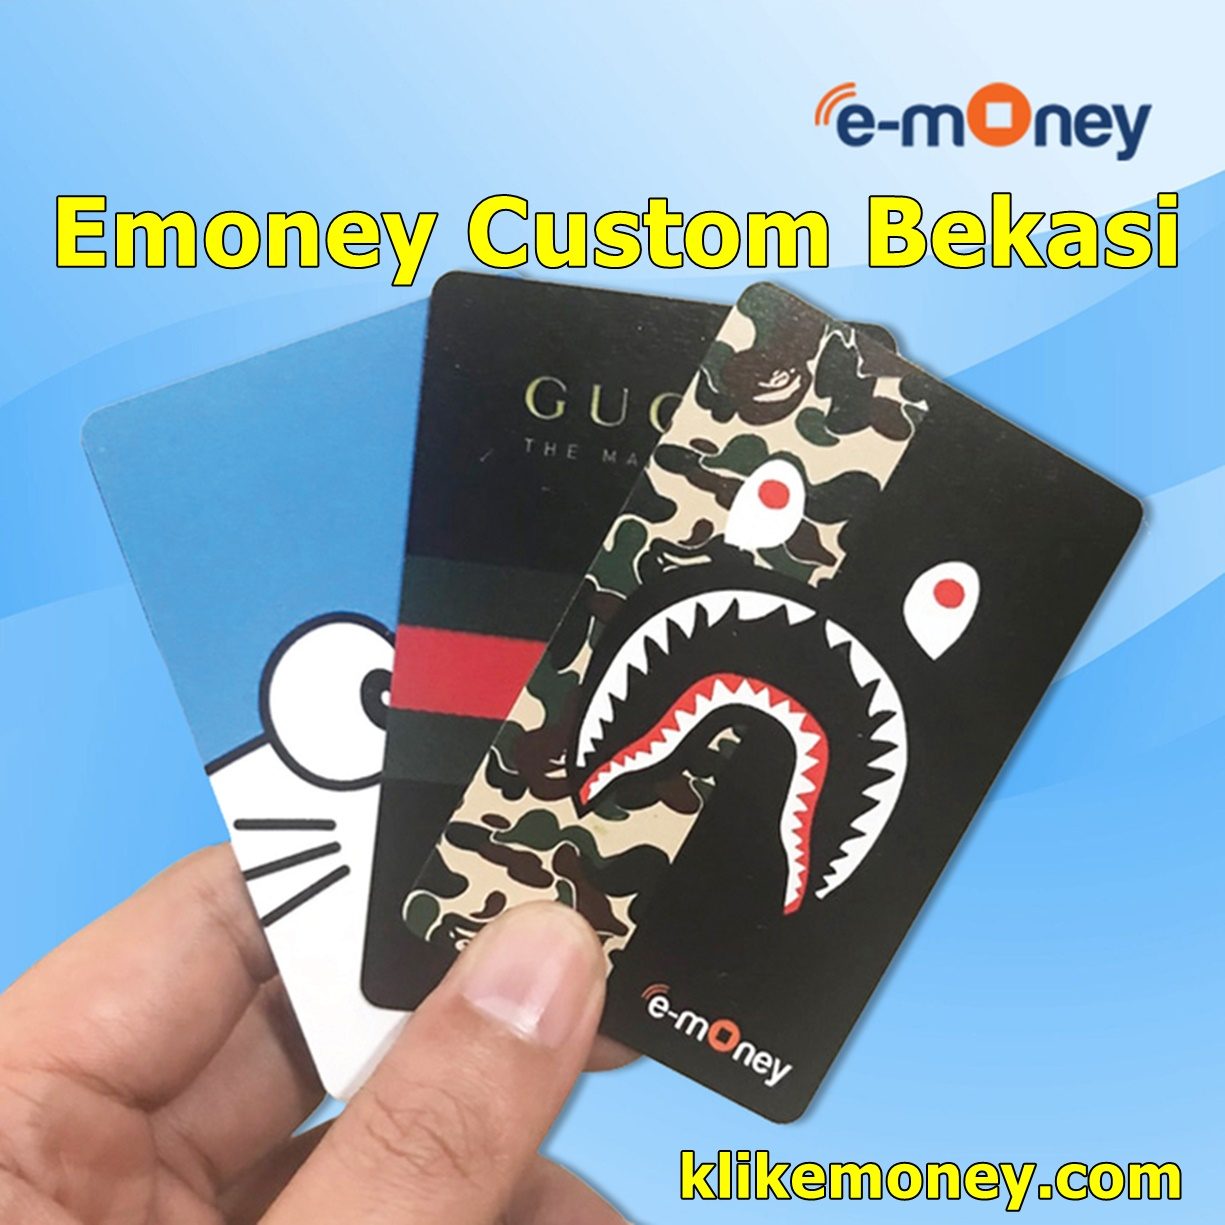 Emoney Custom Bekasi Proses Cepat Bergaransi